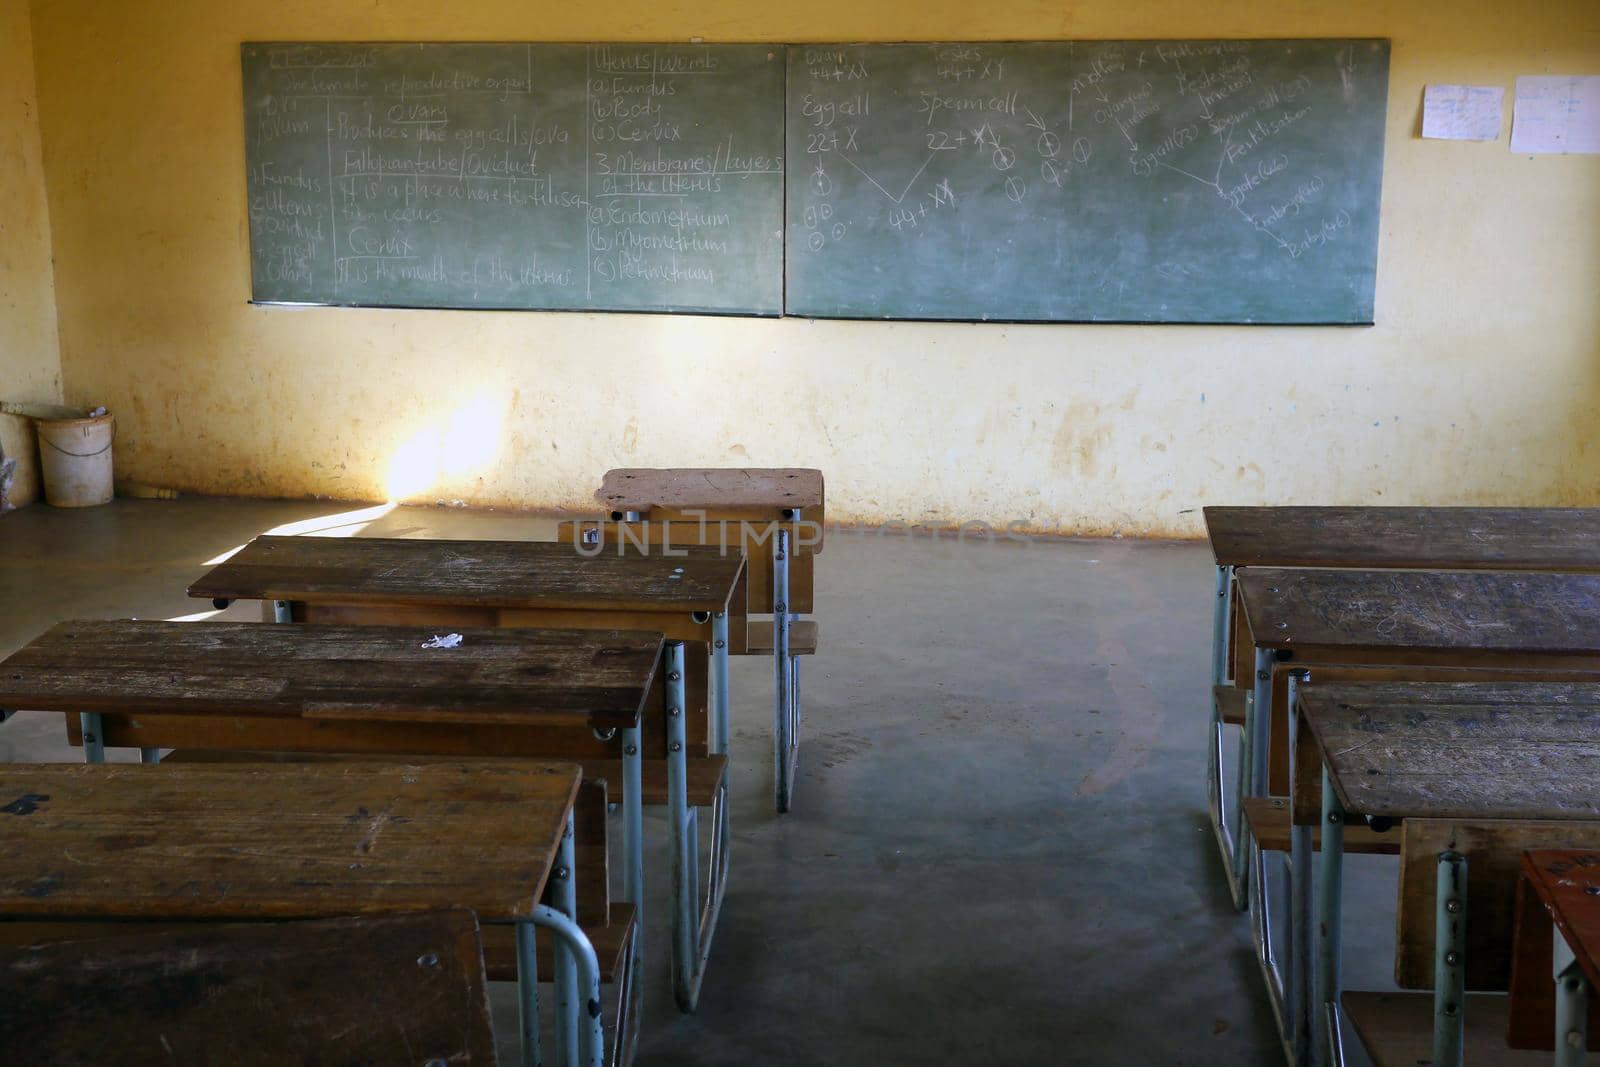 Poor classroom in African school